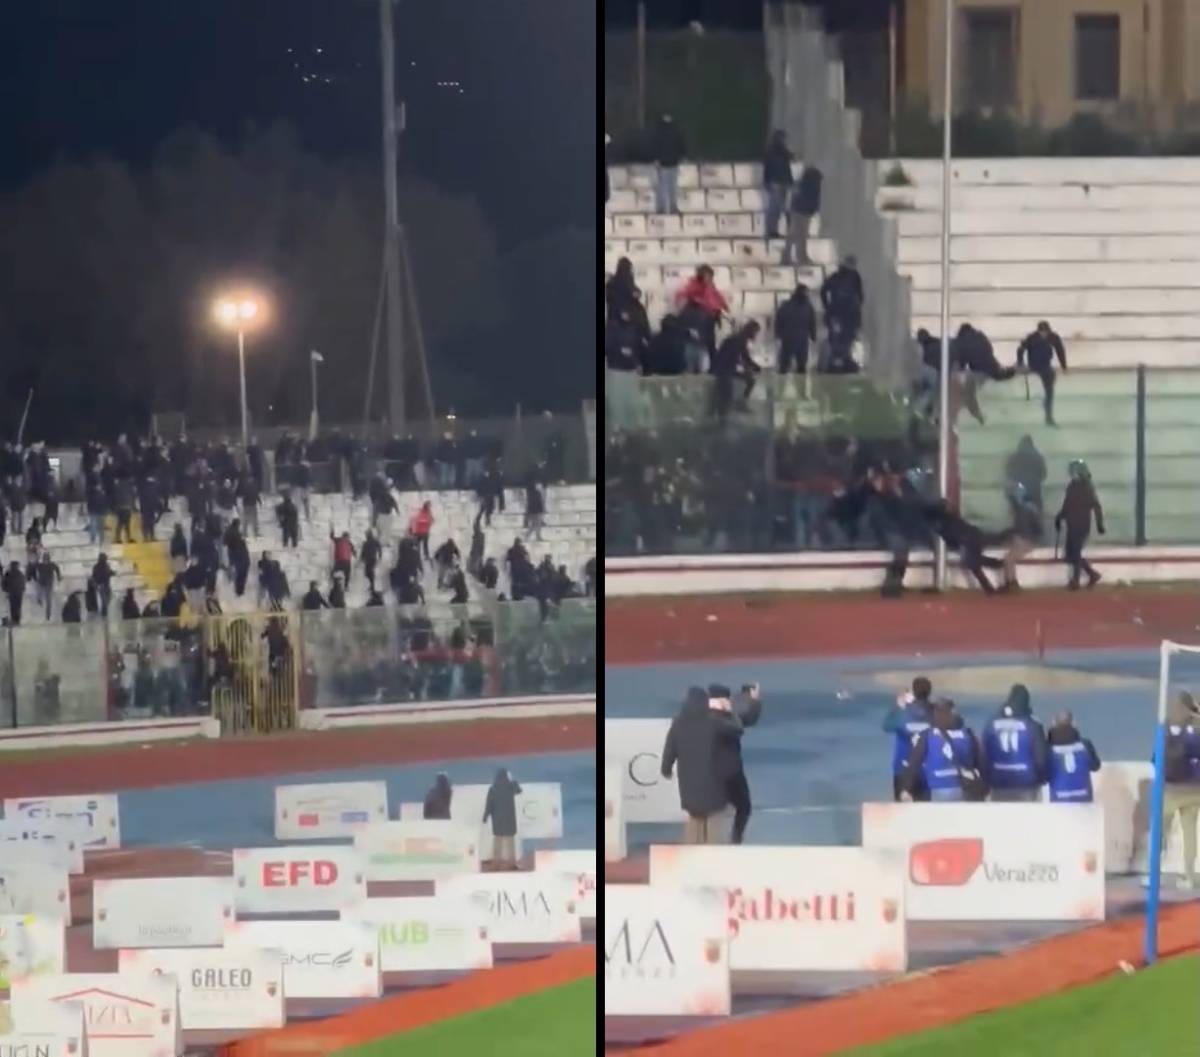 Bombe carta e scontri tra tifosi in campo nell'intervallo: paura durante Casertana-Foggia